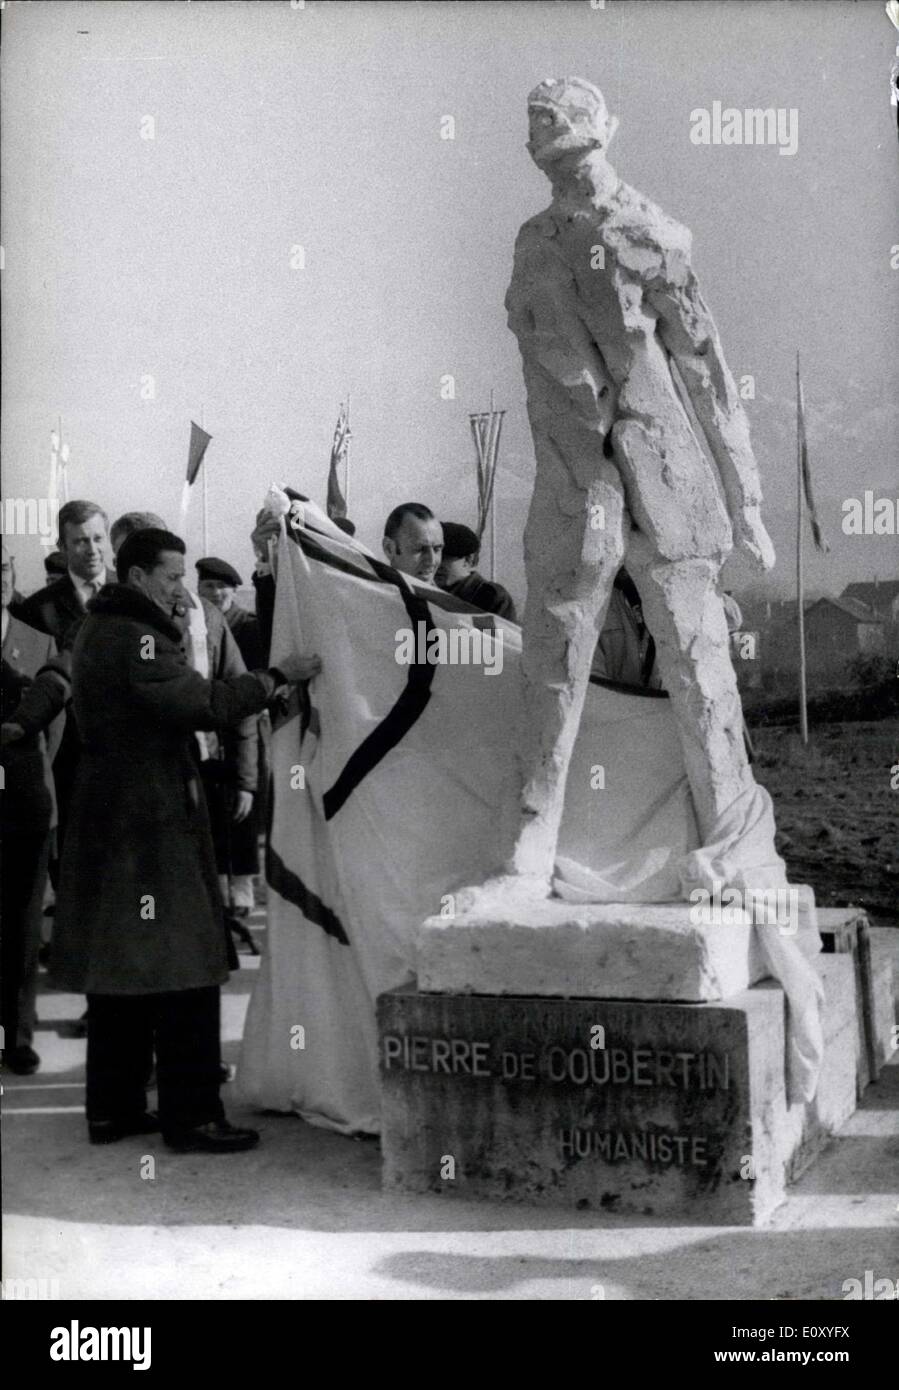 10 févr. 01, 1968 - une statue à la mémoire du Baron Pierre de Coubertin a été dévoilée par le sculpteur Gerard Koch mercredi à Grenoble par le Dr Michallon, le président du comité olympique. La statue est située à l'entrée du stade où les cérémonies d'ouverture aura lieu mardi prochain. Banque D'Images